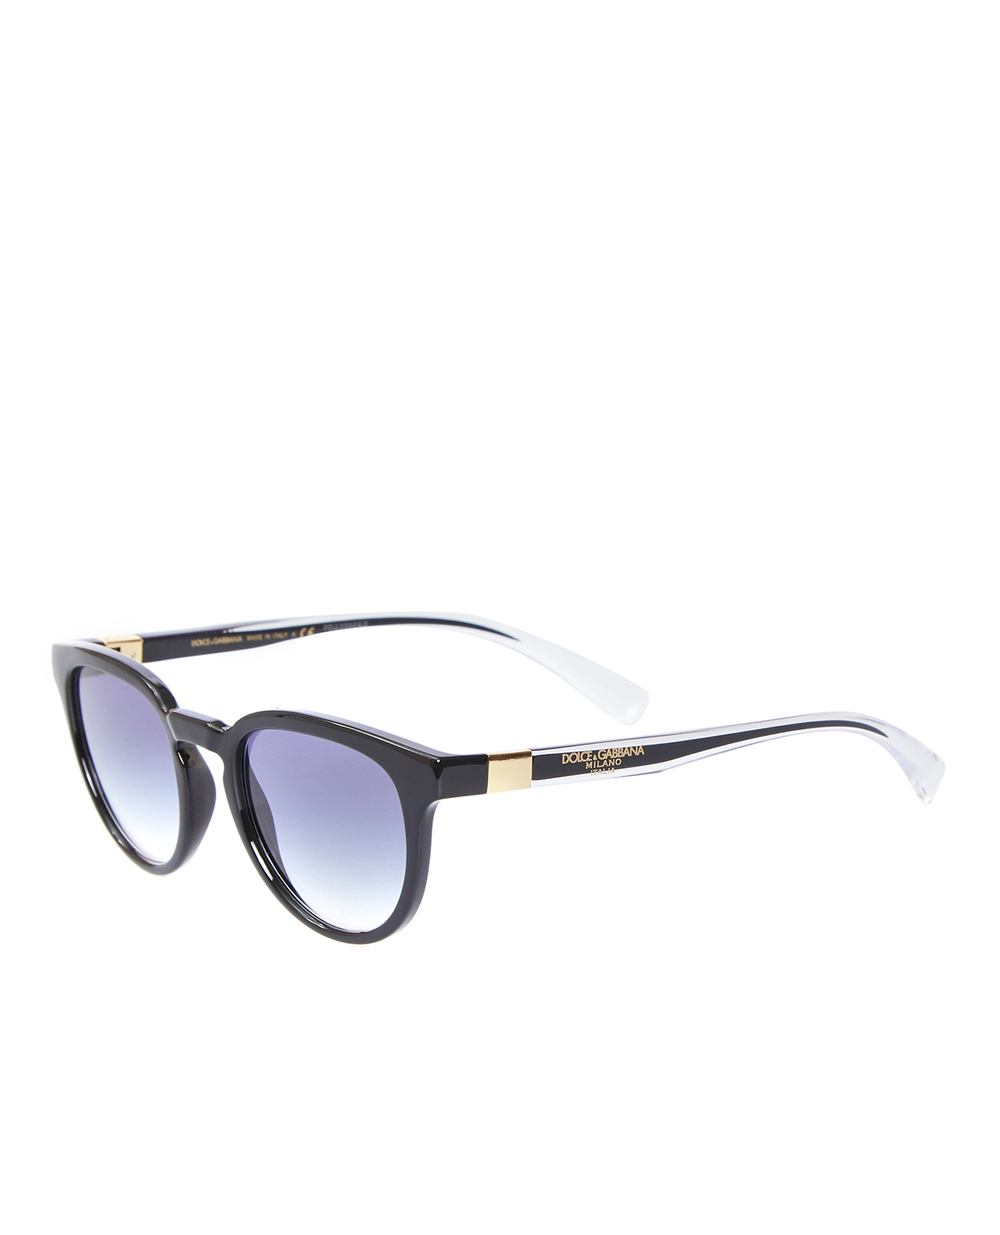 Солнцезащитные очки Dolce&Gabbana 6148501/7950, черный цвет • Купить в интернет-магазине Kameron